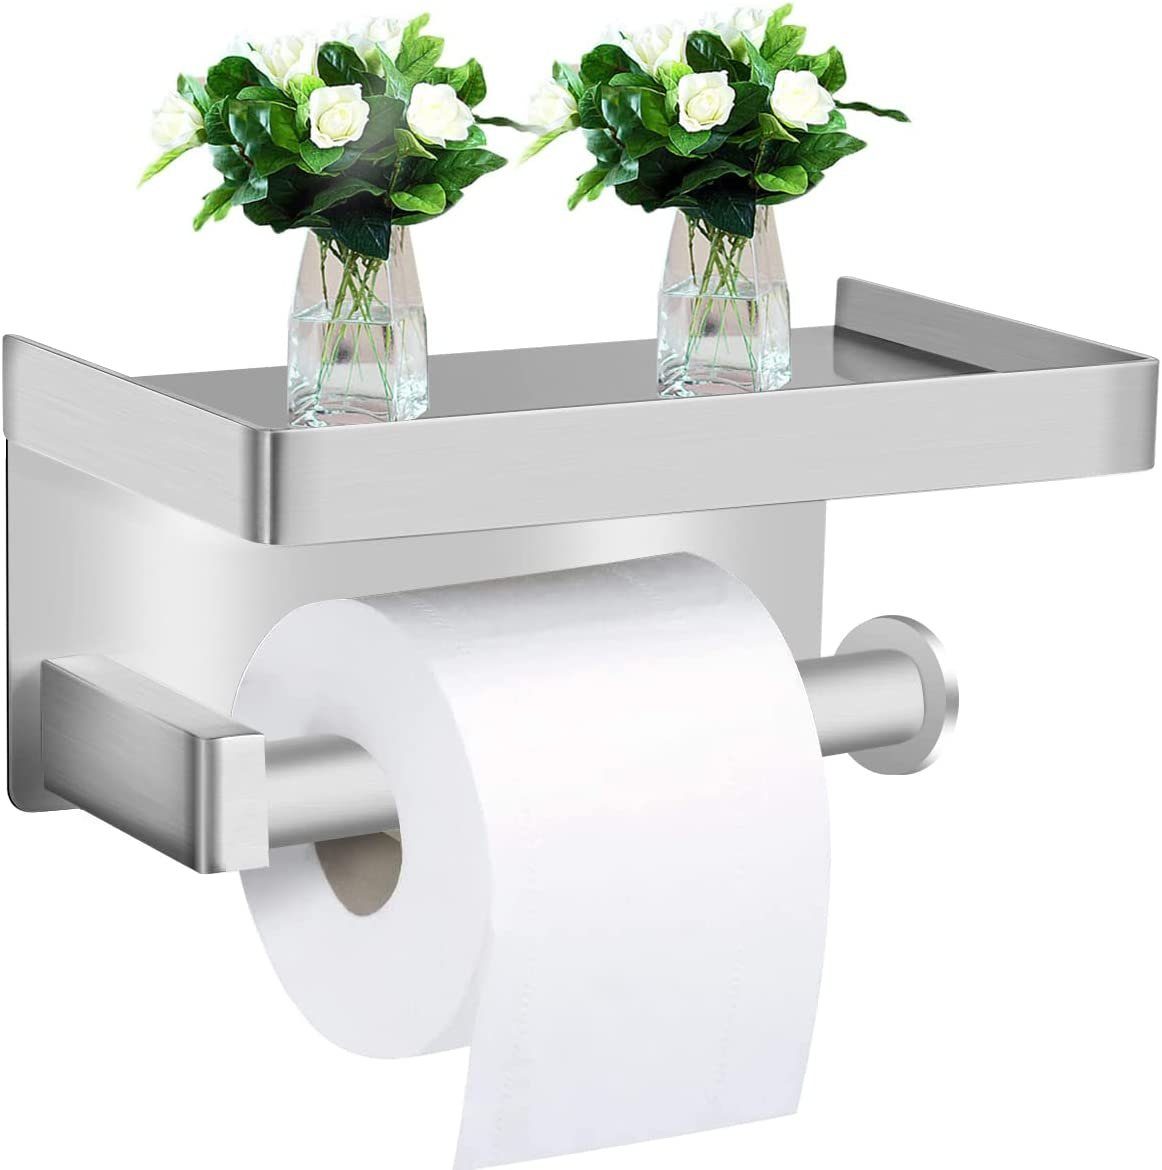 Toilettenpapierhalter mit Ablage Klopapierhalter Klorollenhalter Edelstahl DE 